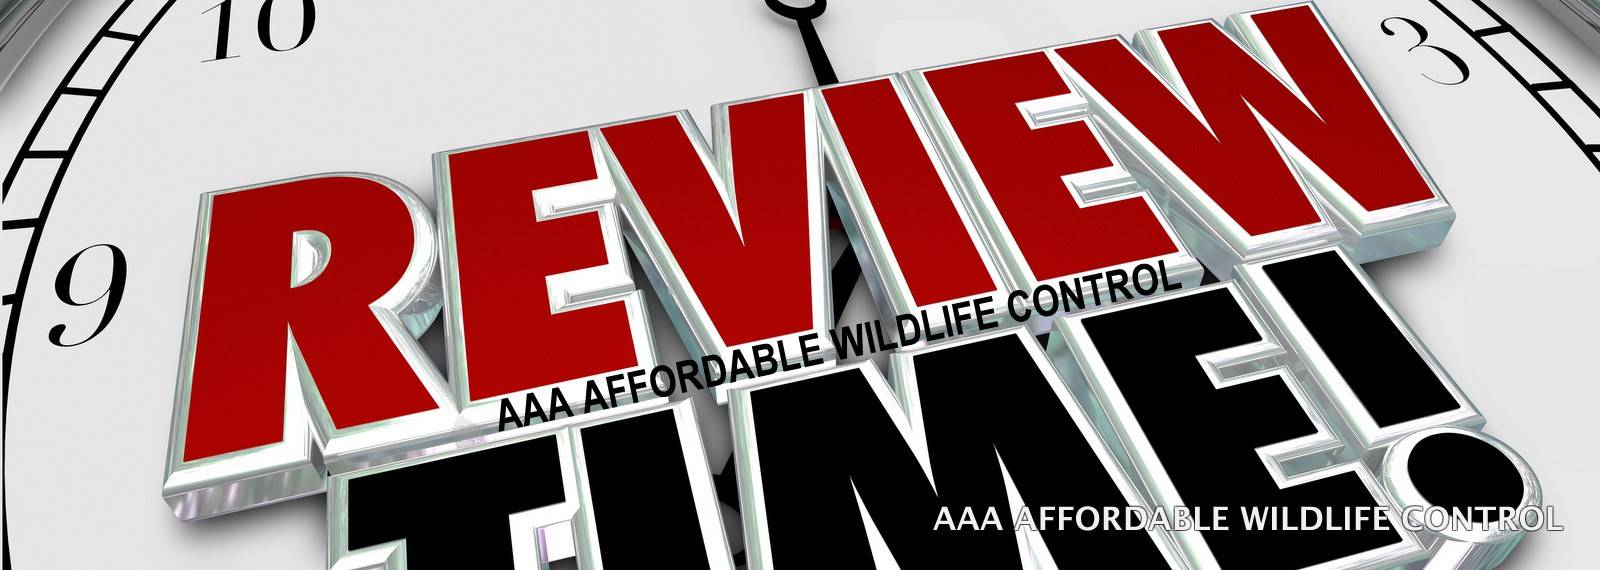 Wildlife Removal Toronto Reviews, Raccoon Removal Reviews, AAA Affordable Wildlife Control Reviews